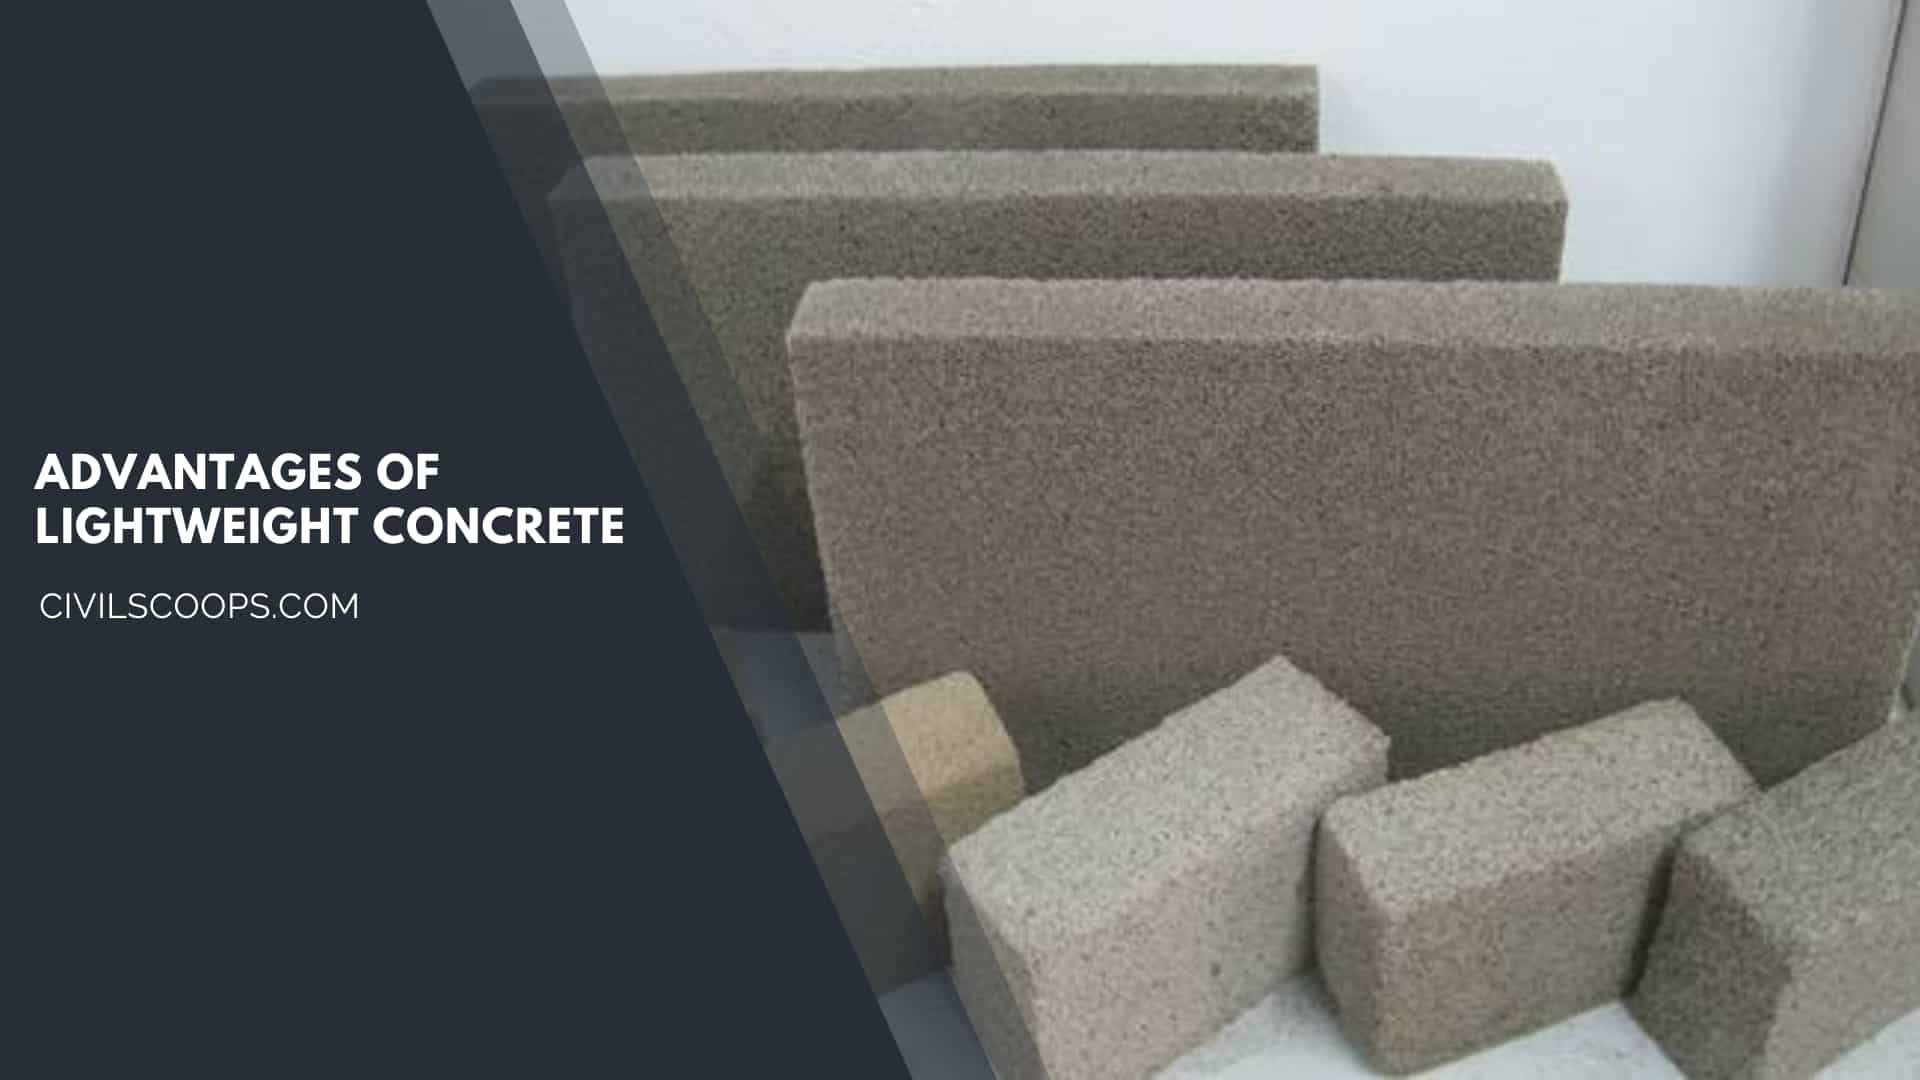 Advantages of Lightweight Concrete